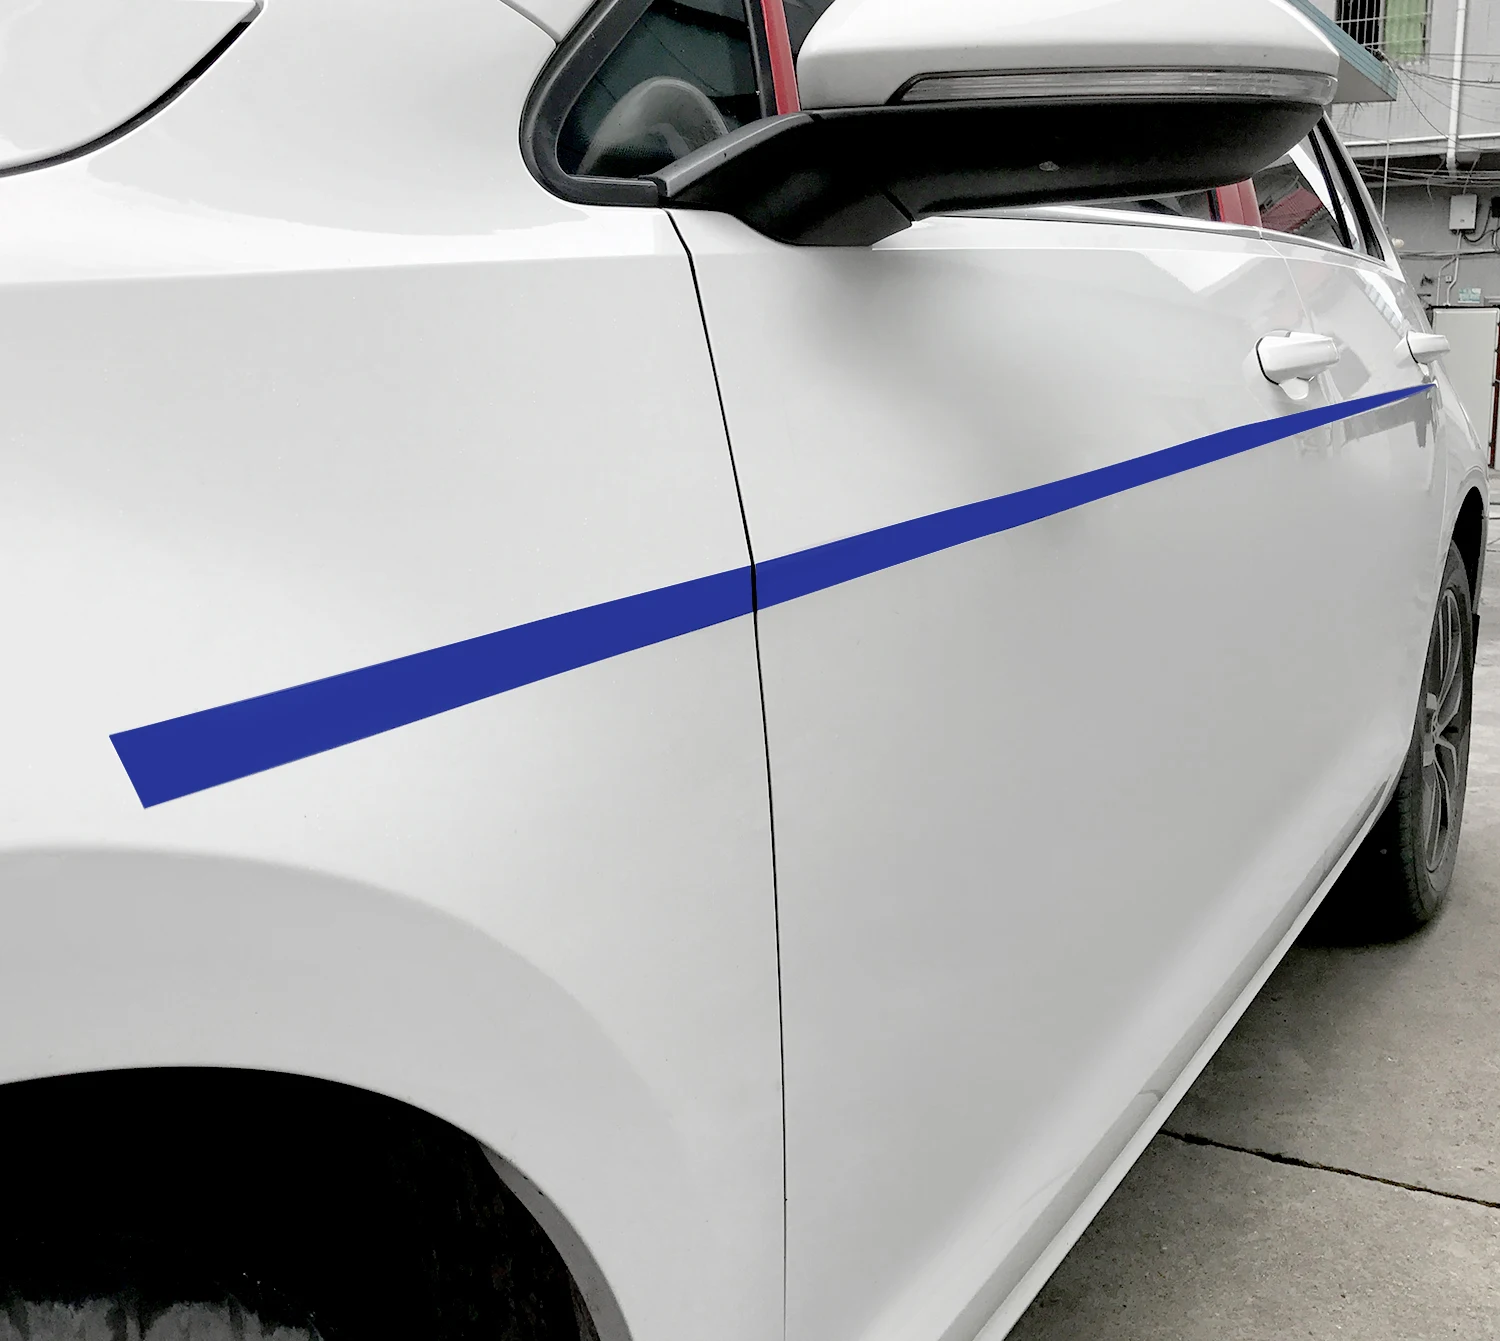 Пара дверь боковая линия пояса крыло тела пленка из углеродного волокна и наклейки на авто-Стайлинг для Volkswagen VW Golf 7 MK7 аксессуары - Название цвета: ice matt blue